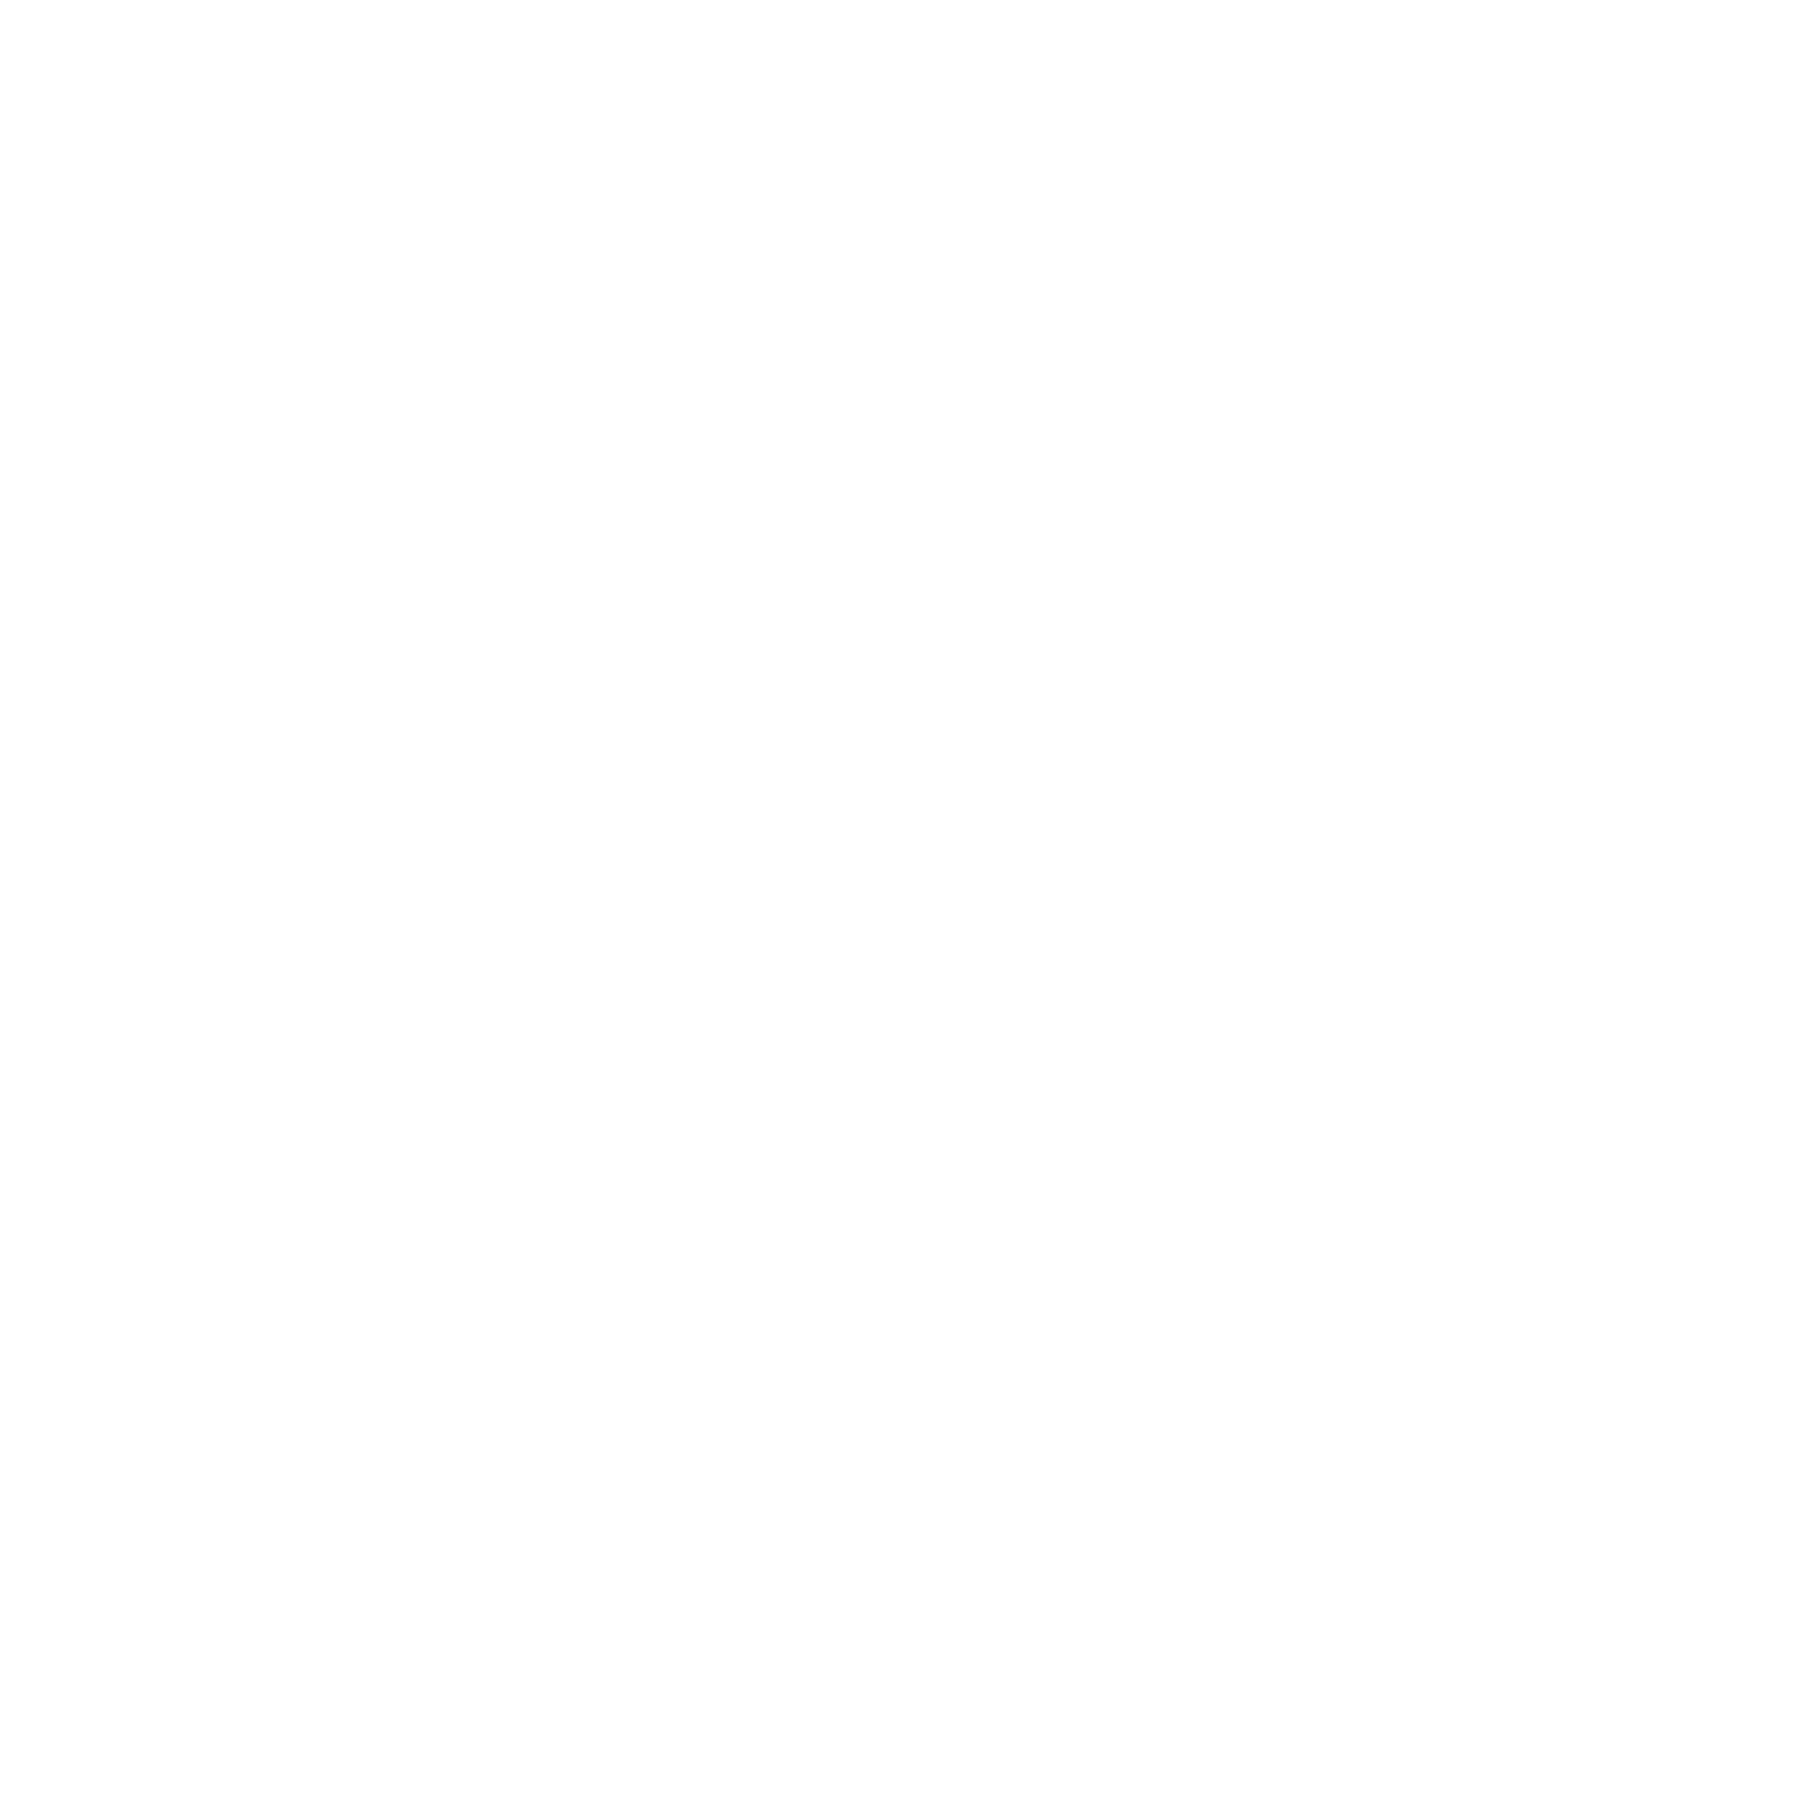 Marsa Al Bateen East Marina